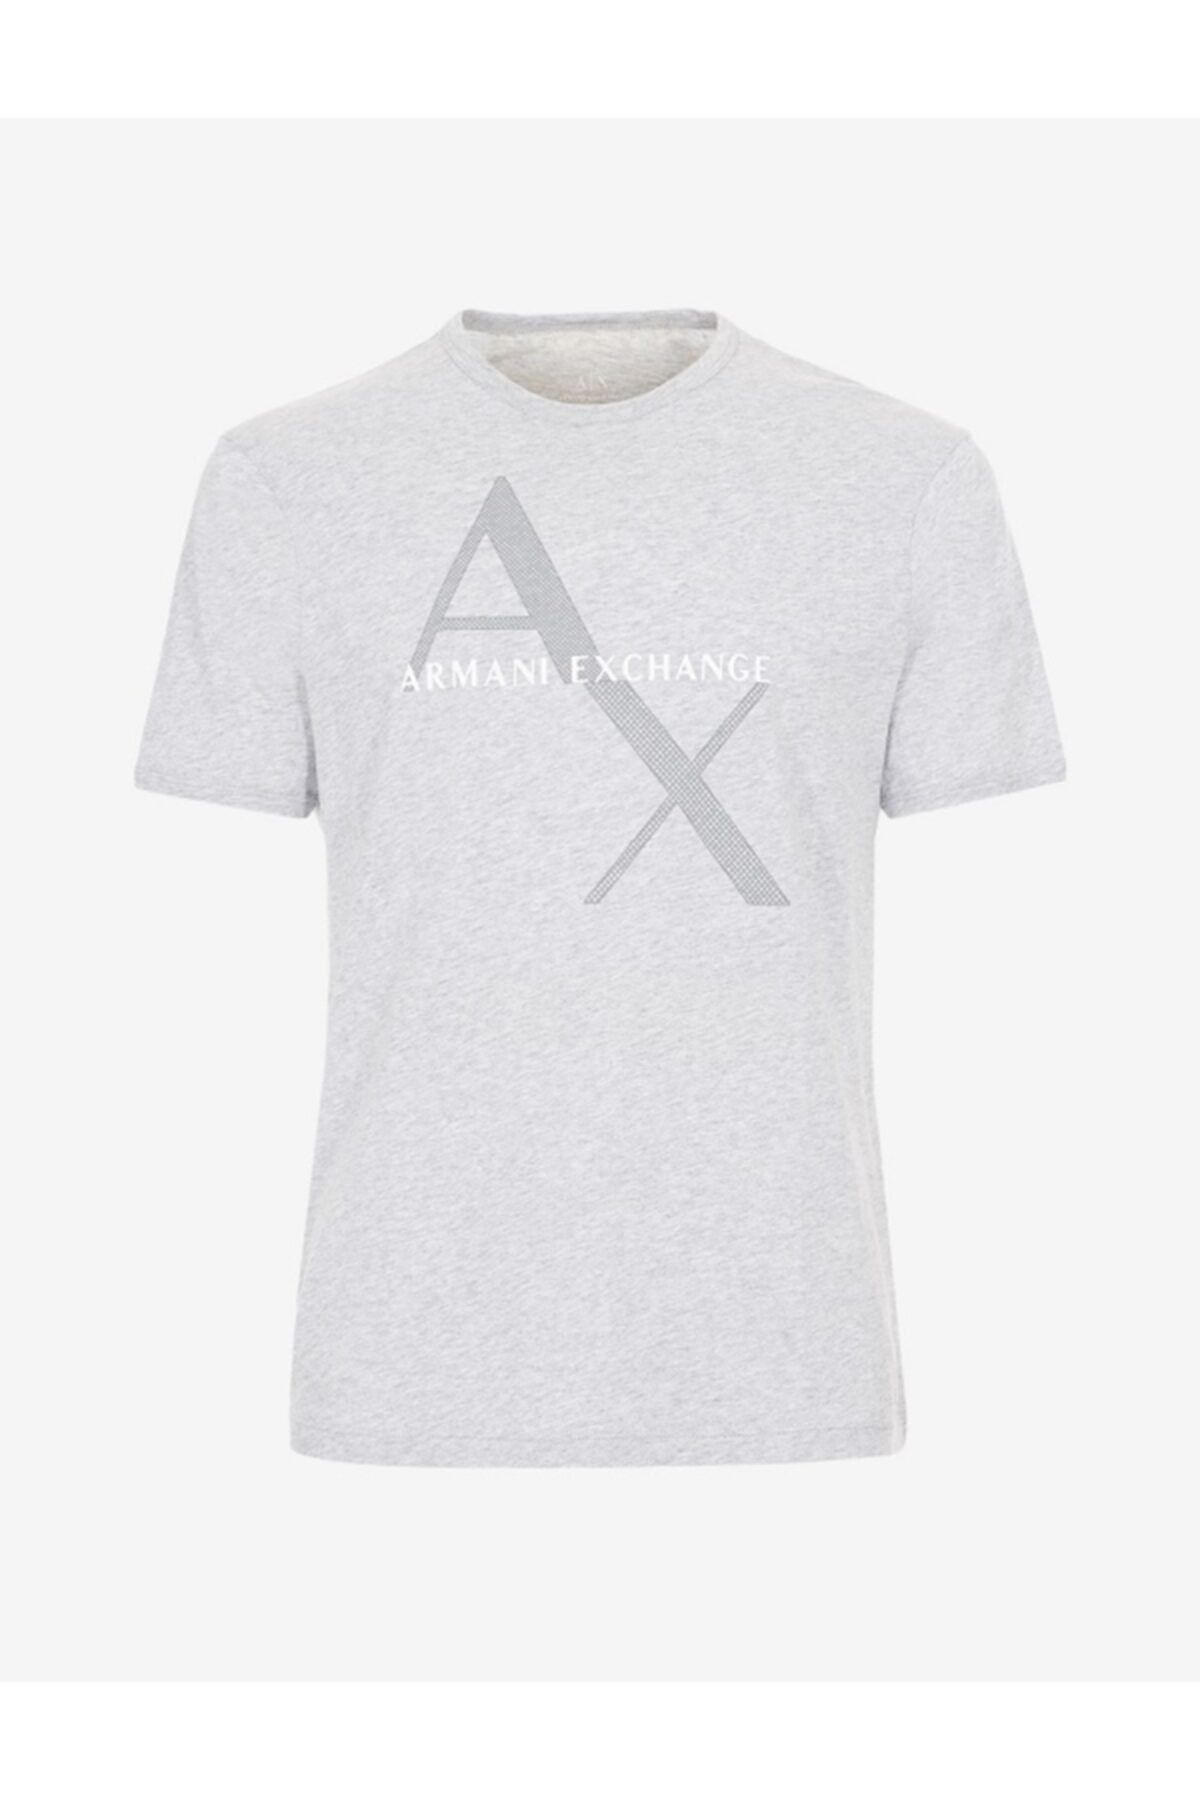 Armani Exchange Erkek Gri T-shirt